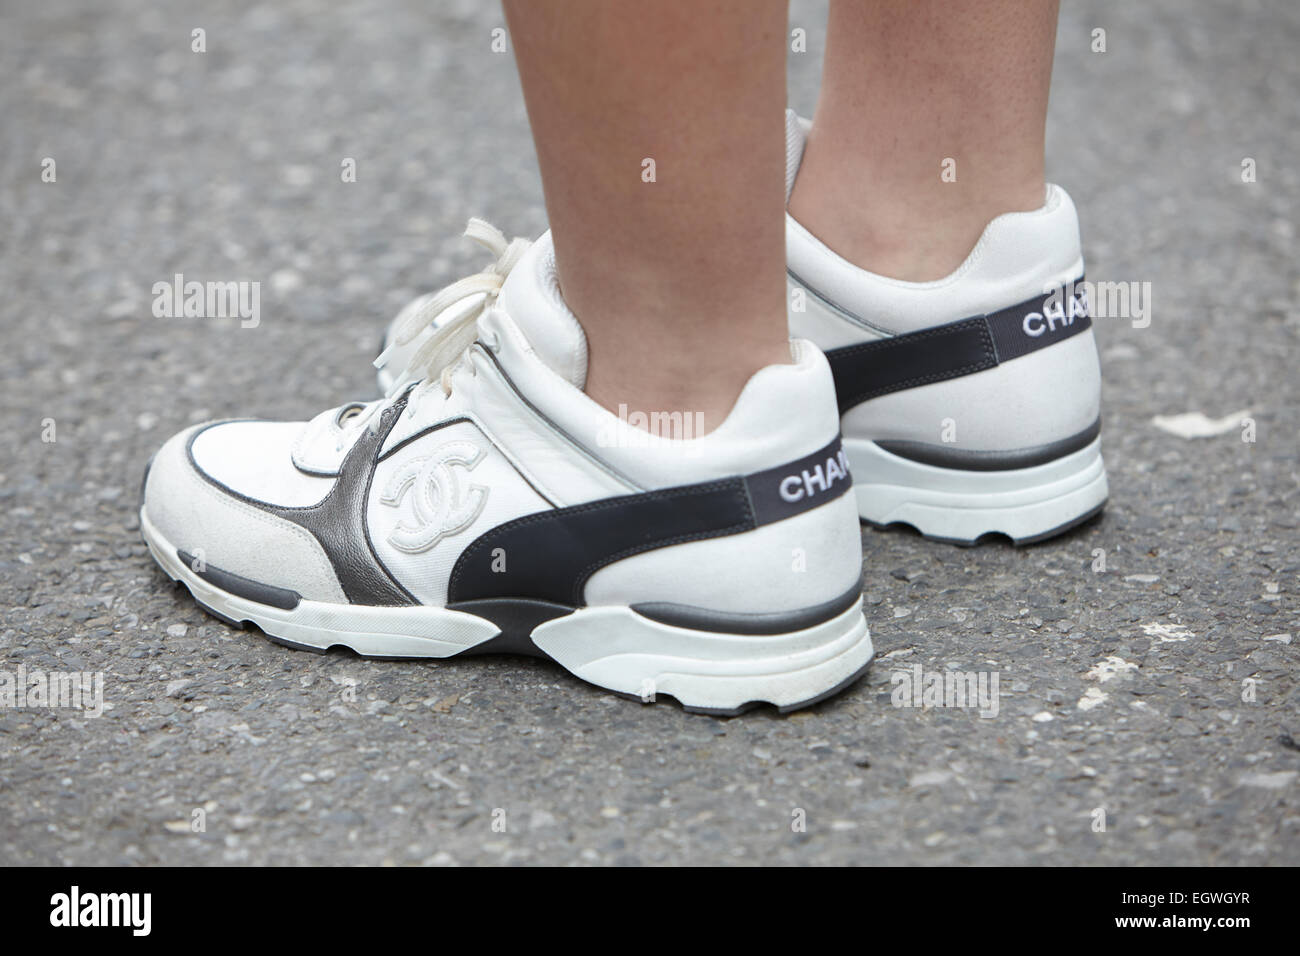 Chaussures Chanel Banque d'image et photos - Alamy